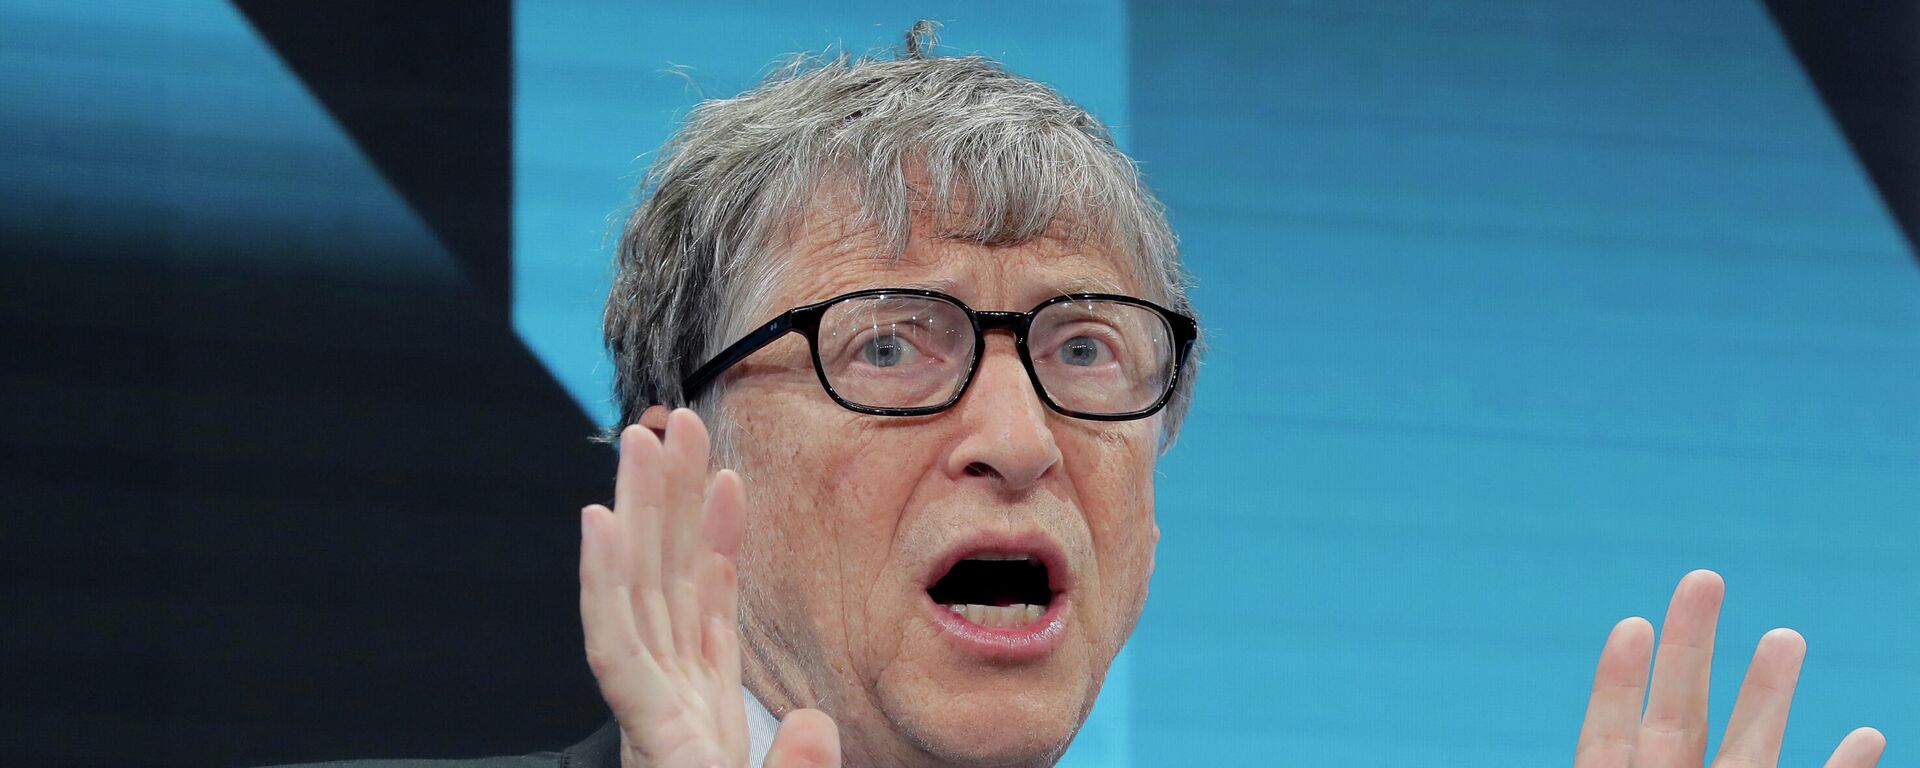 Bill Gates, multimillonario estadounidense, durante el Foro Económico Mundial en Davos (Suiza), el 22 de enero del 2019 - Sputnik Mundo, 1920, 19.05.2021